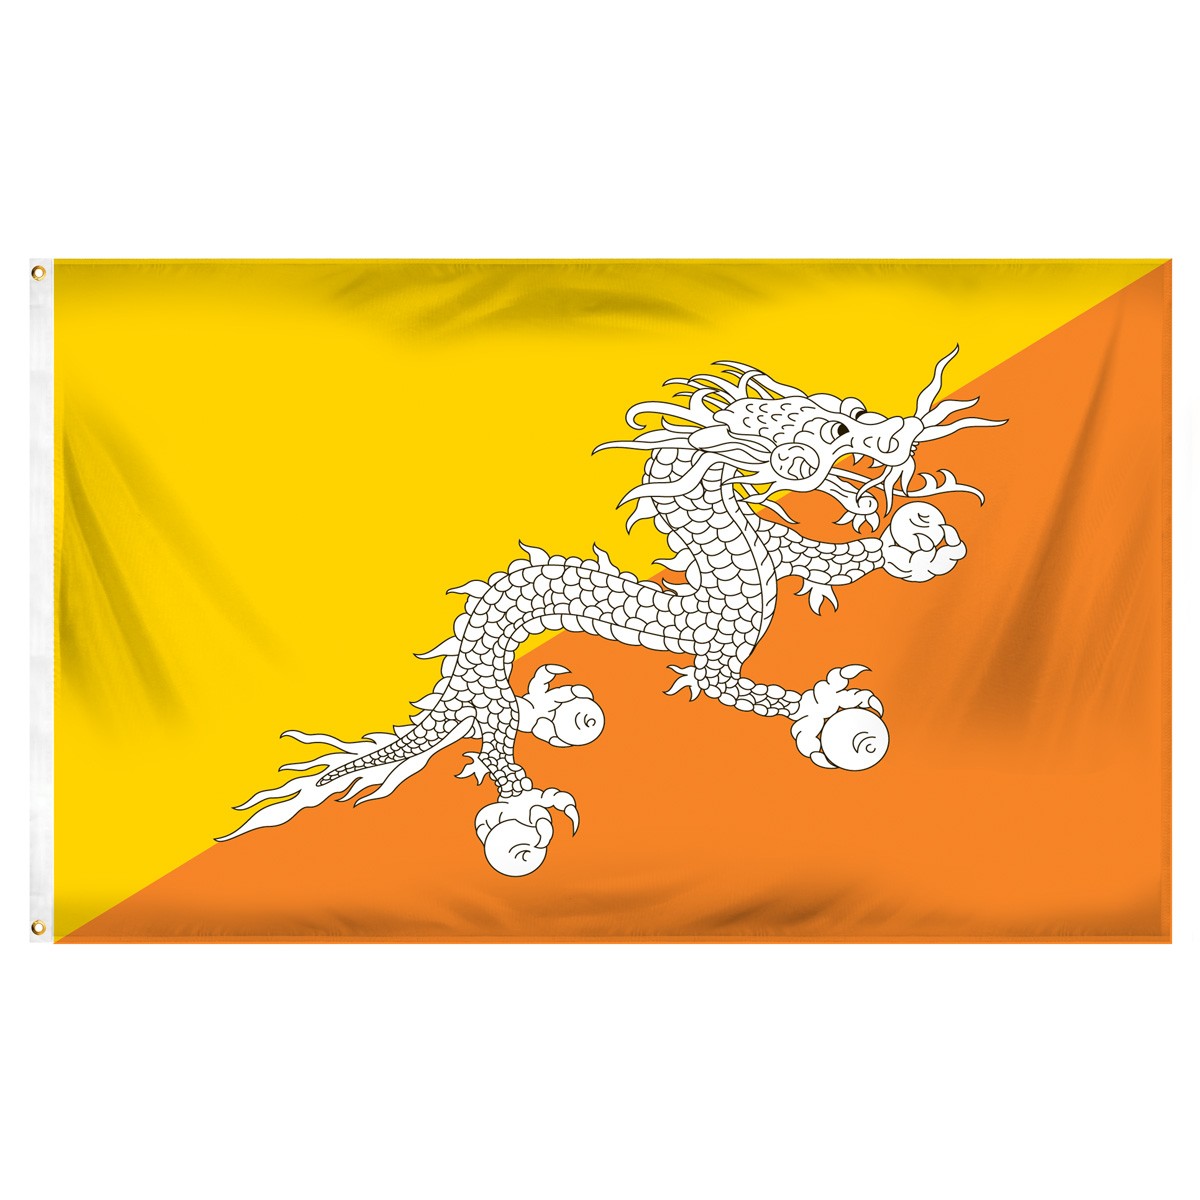 Bhutan Horizontal Streamers and Flags